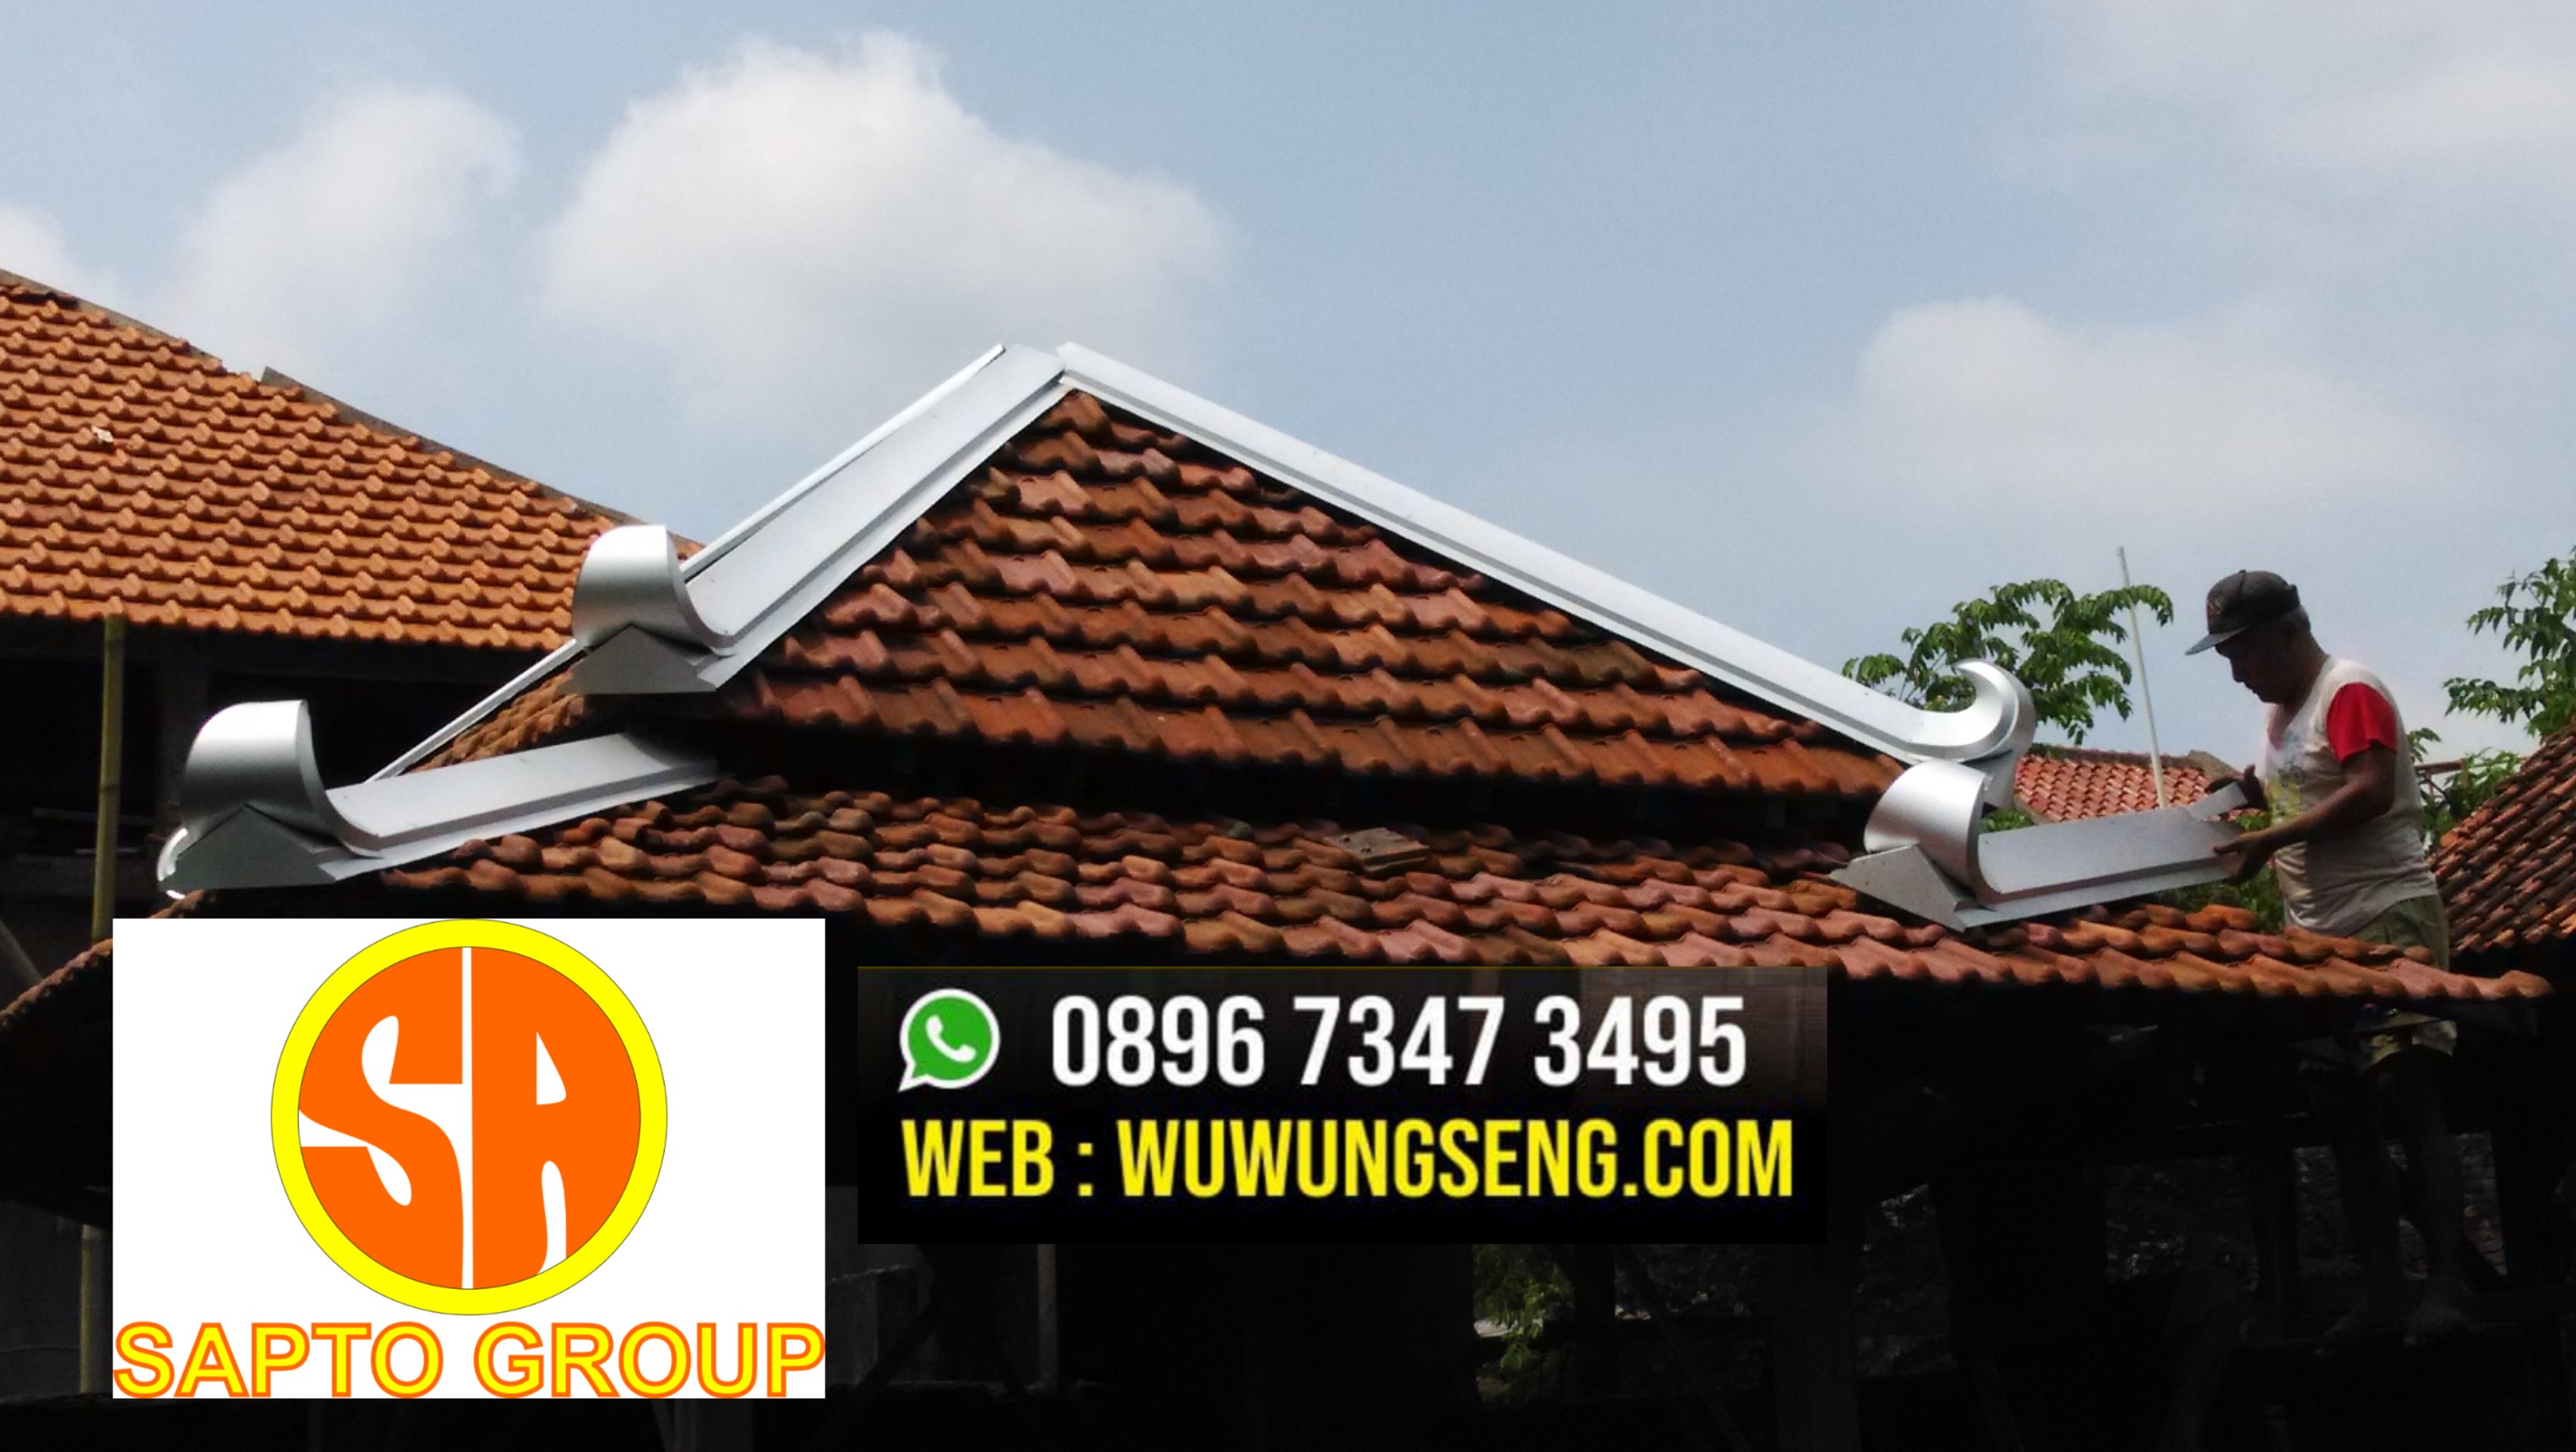 solusi kebocoran atap rumah anda